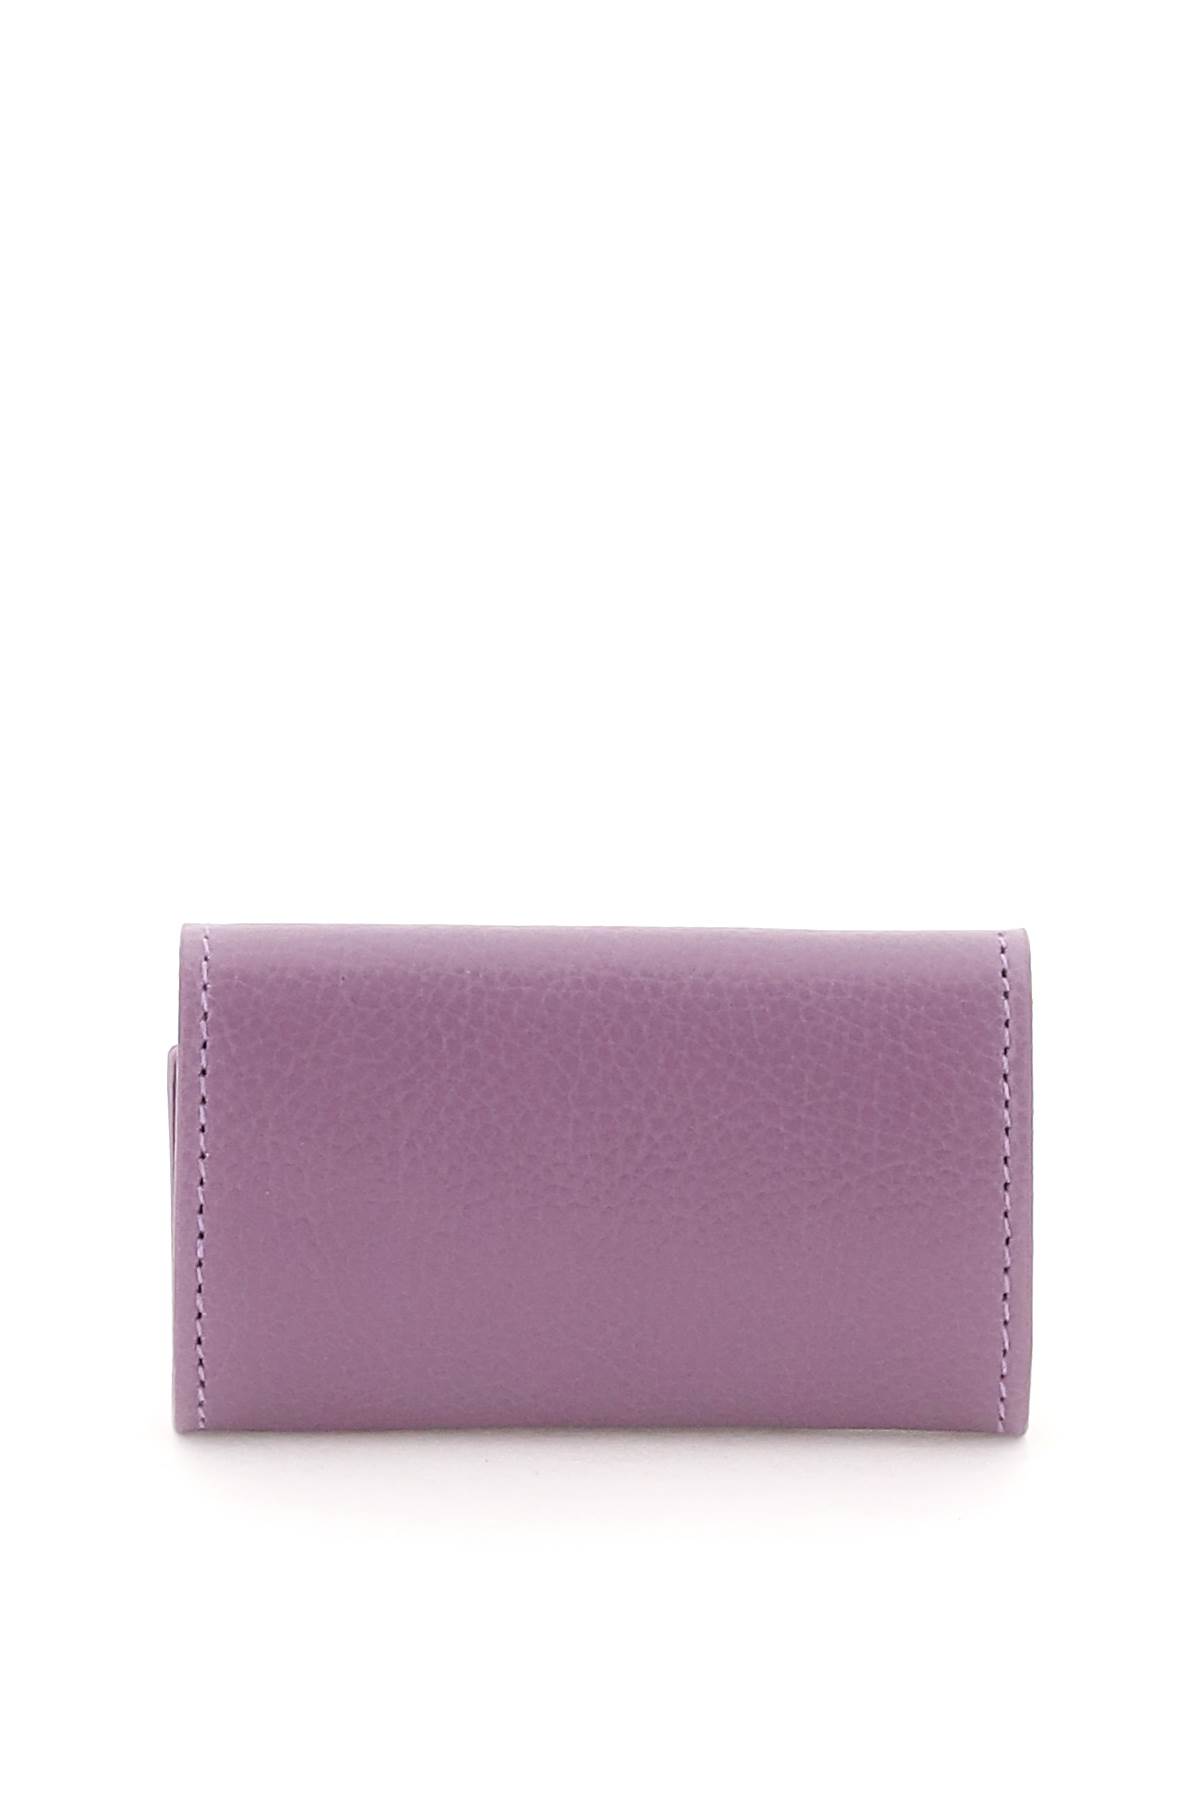 Shop Il Bisonte Leather Key Holder In Glicine (purple)